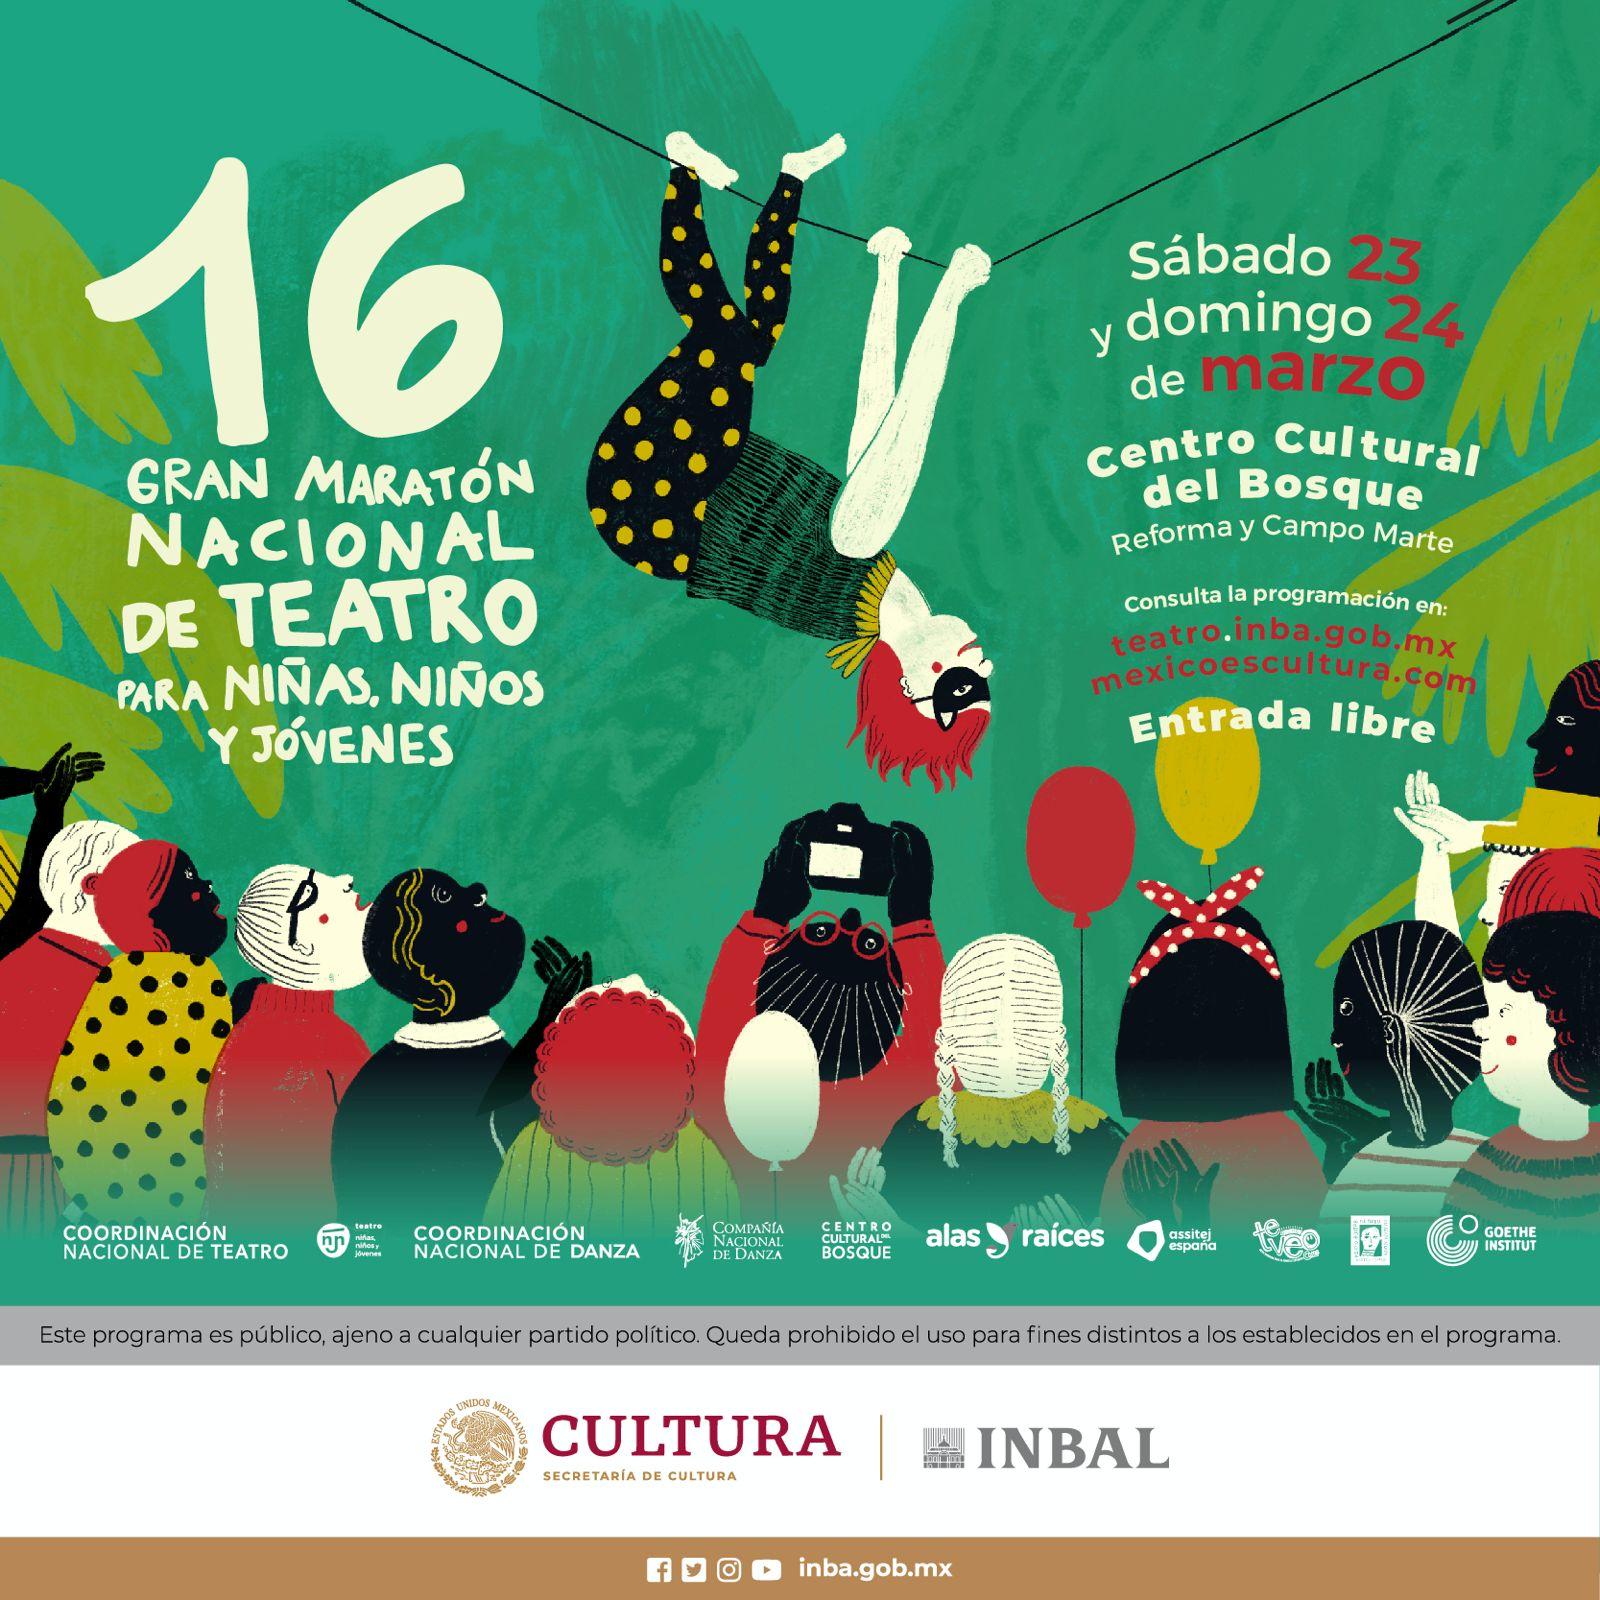 المكسيك تحتفل بالماراثون المسرحي الكبير السادس عشر للأطفال والشباب